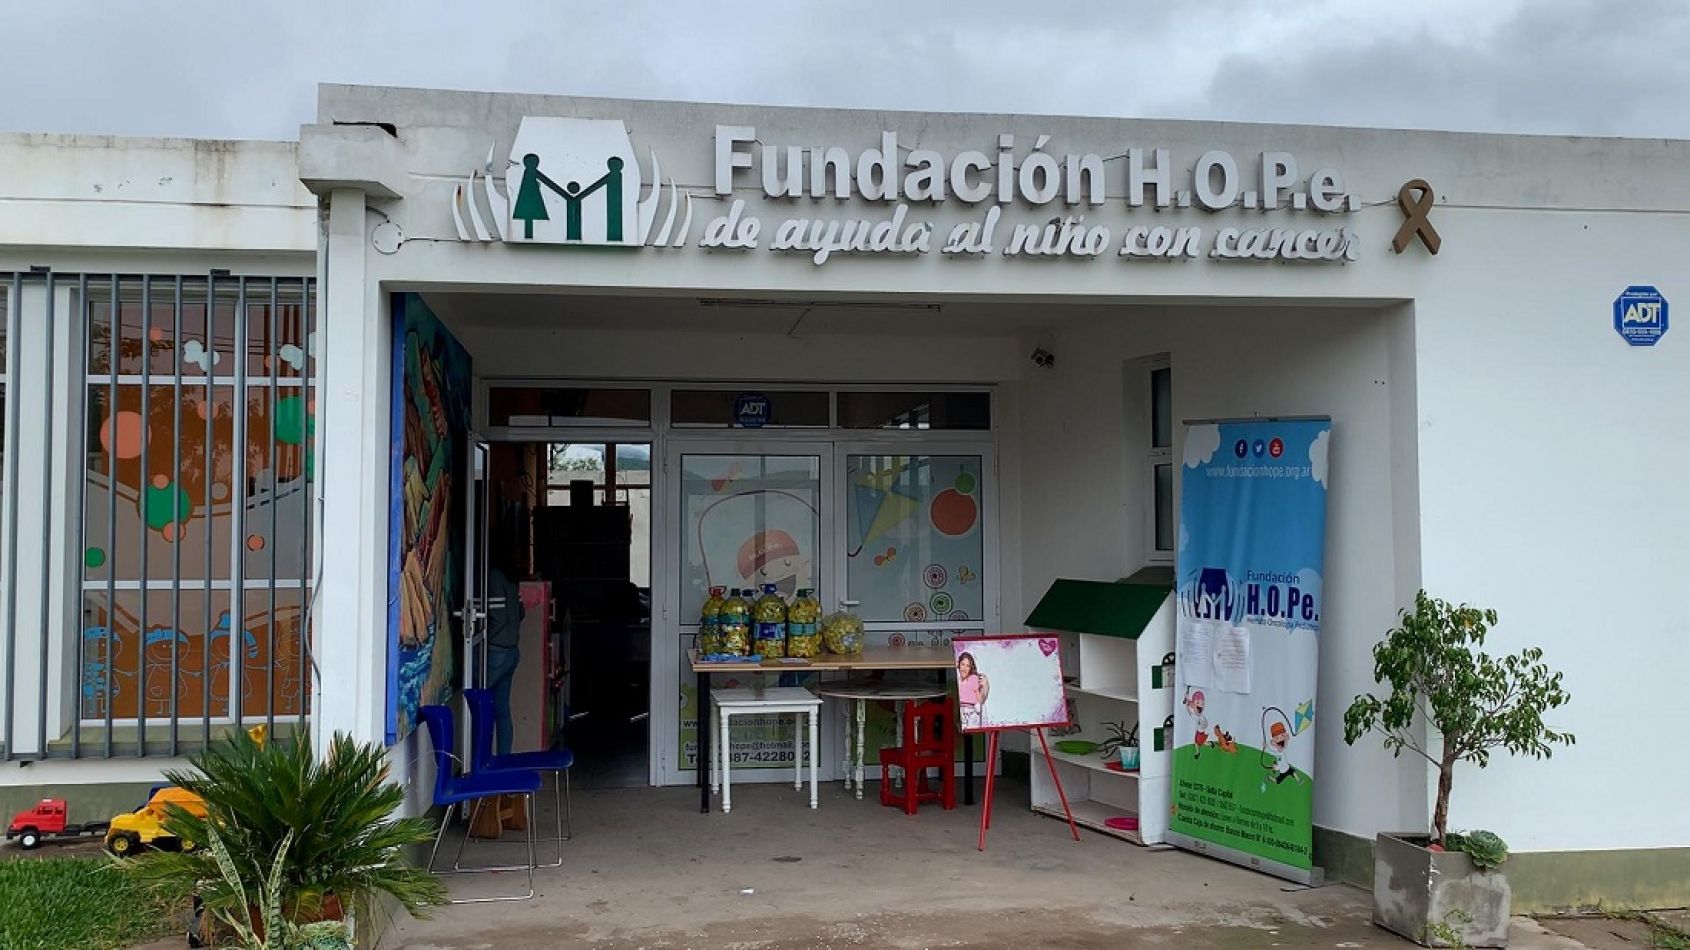 La Fundación Hope está realizando una colecta de juguetes para el Día del Niño